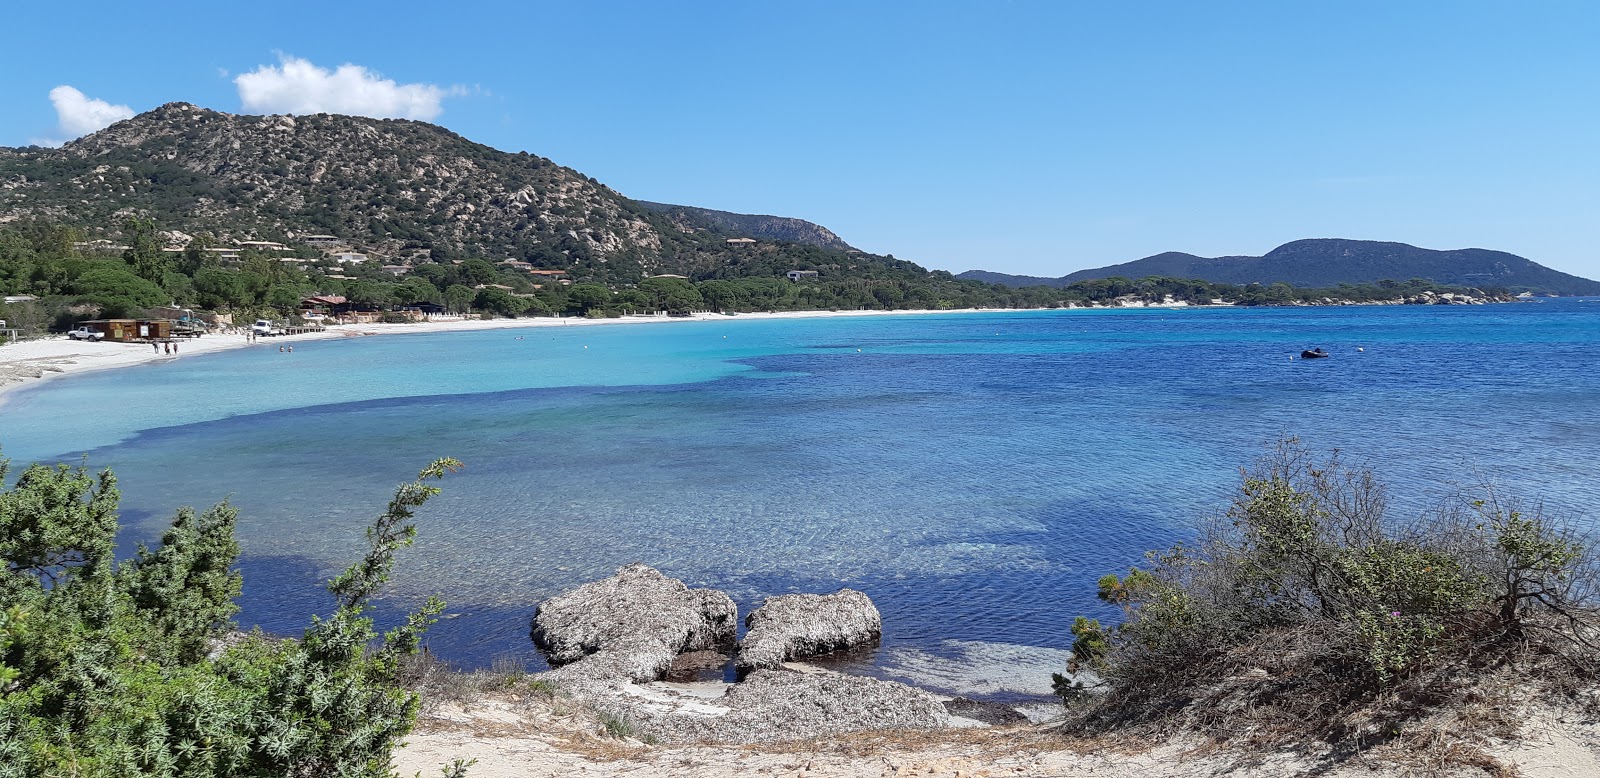 Plage d'Acciaju beach (Bocca del'Oro, South Corsica) on the map with ...